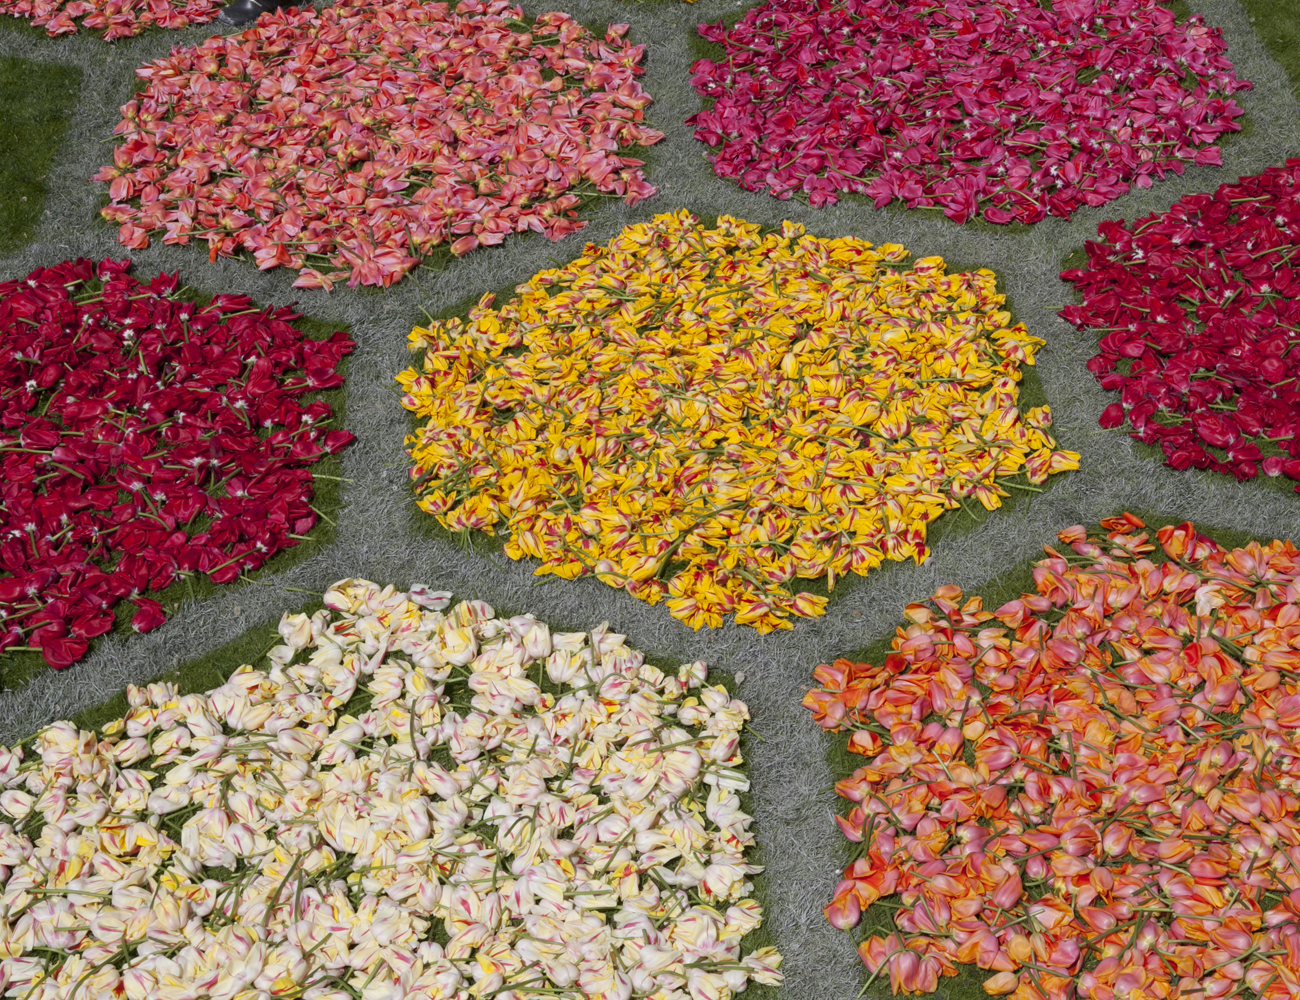 Zeshoekige bloemperken van tulpenkoppen, detail